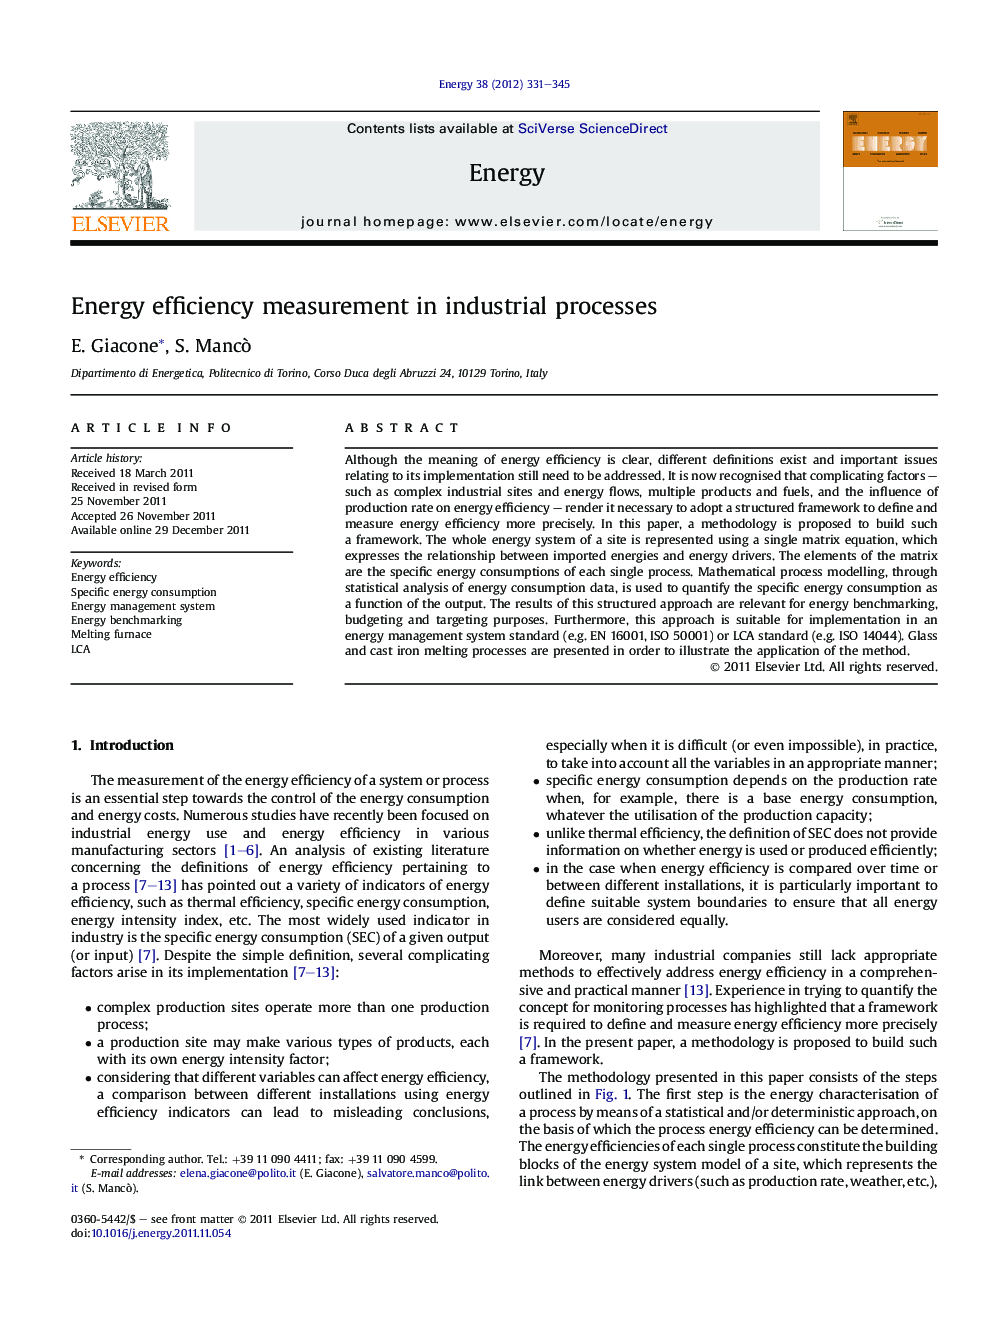 Energy efficiency measurement in industrial processes